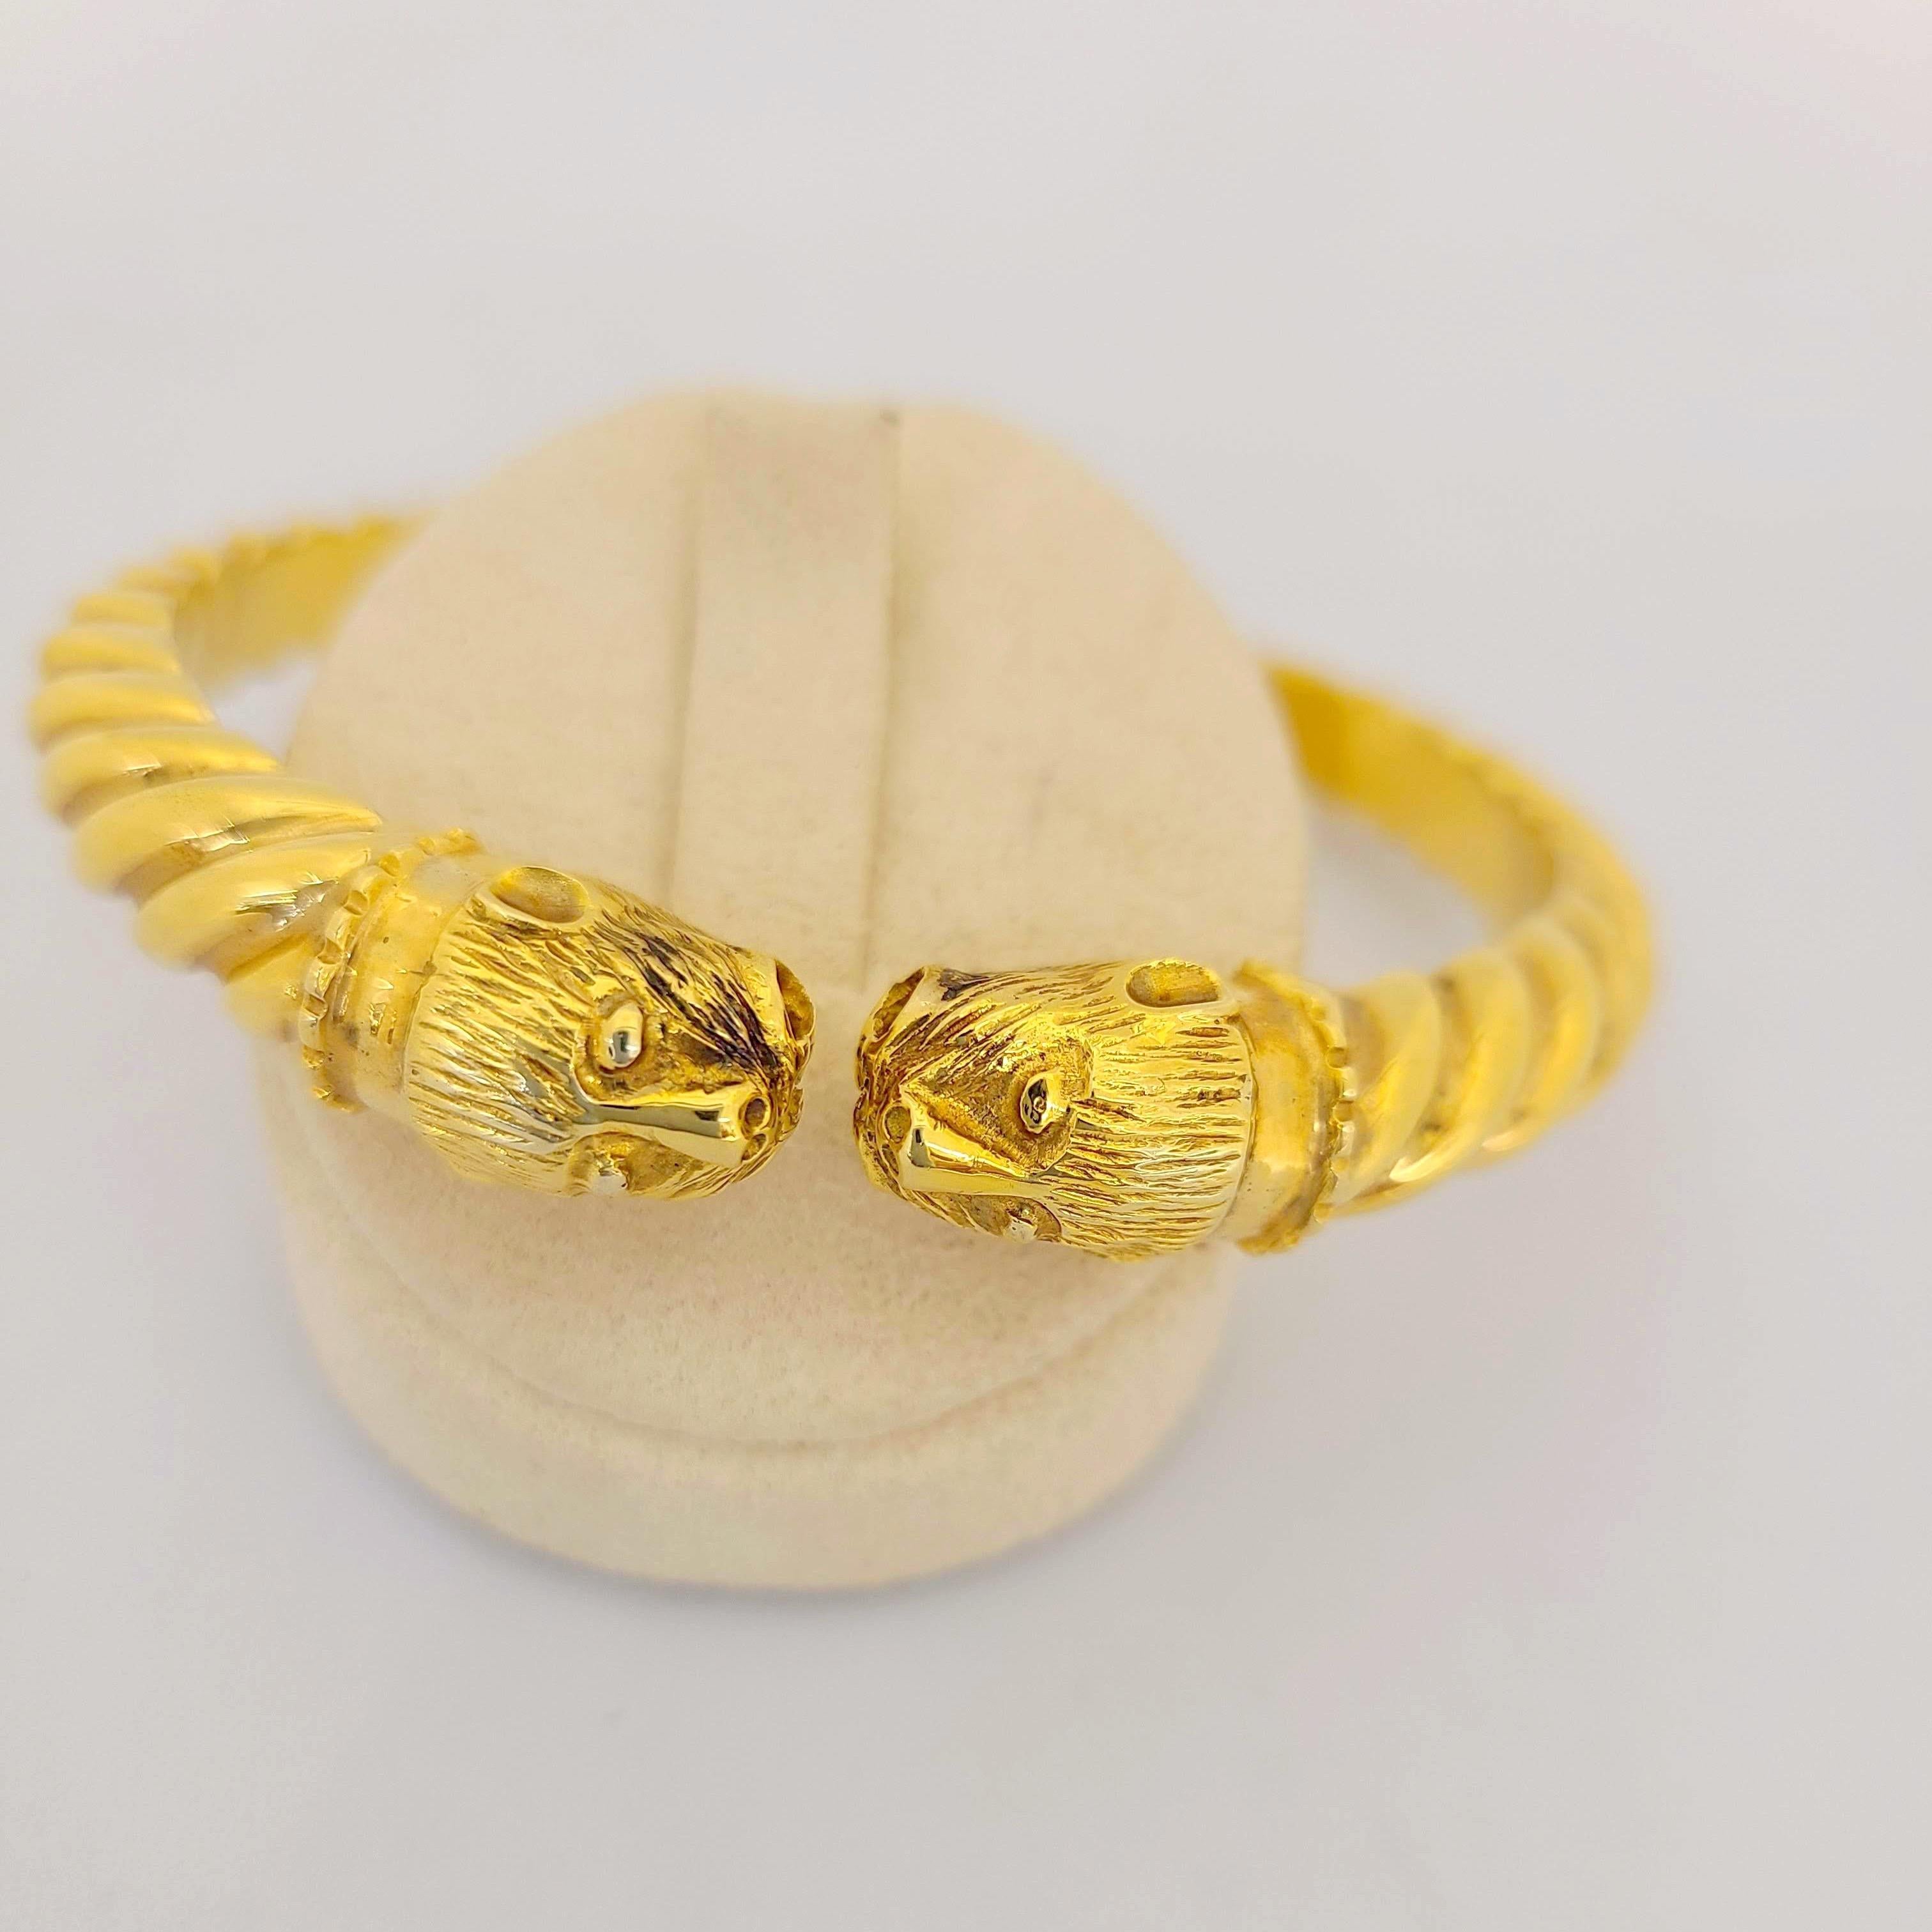 Dieses Armband aus 24/18 Karat Gelbgold wurde von Zolotas aus Athen, Griechenland, entworfen. Das 1895 gegründete Unternehmen verbindet griechisches Erbe mit modernem Stil, um diese zeitlosen Stücke zu kreieren. Begehrt bei Royals und